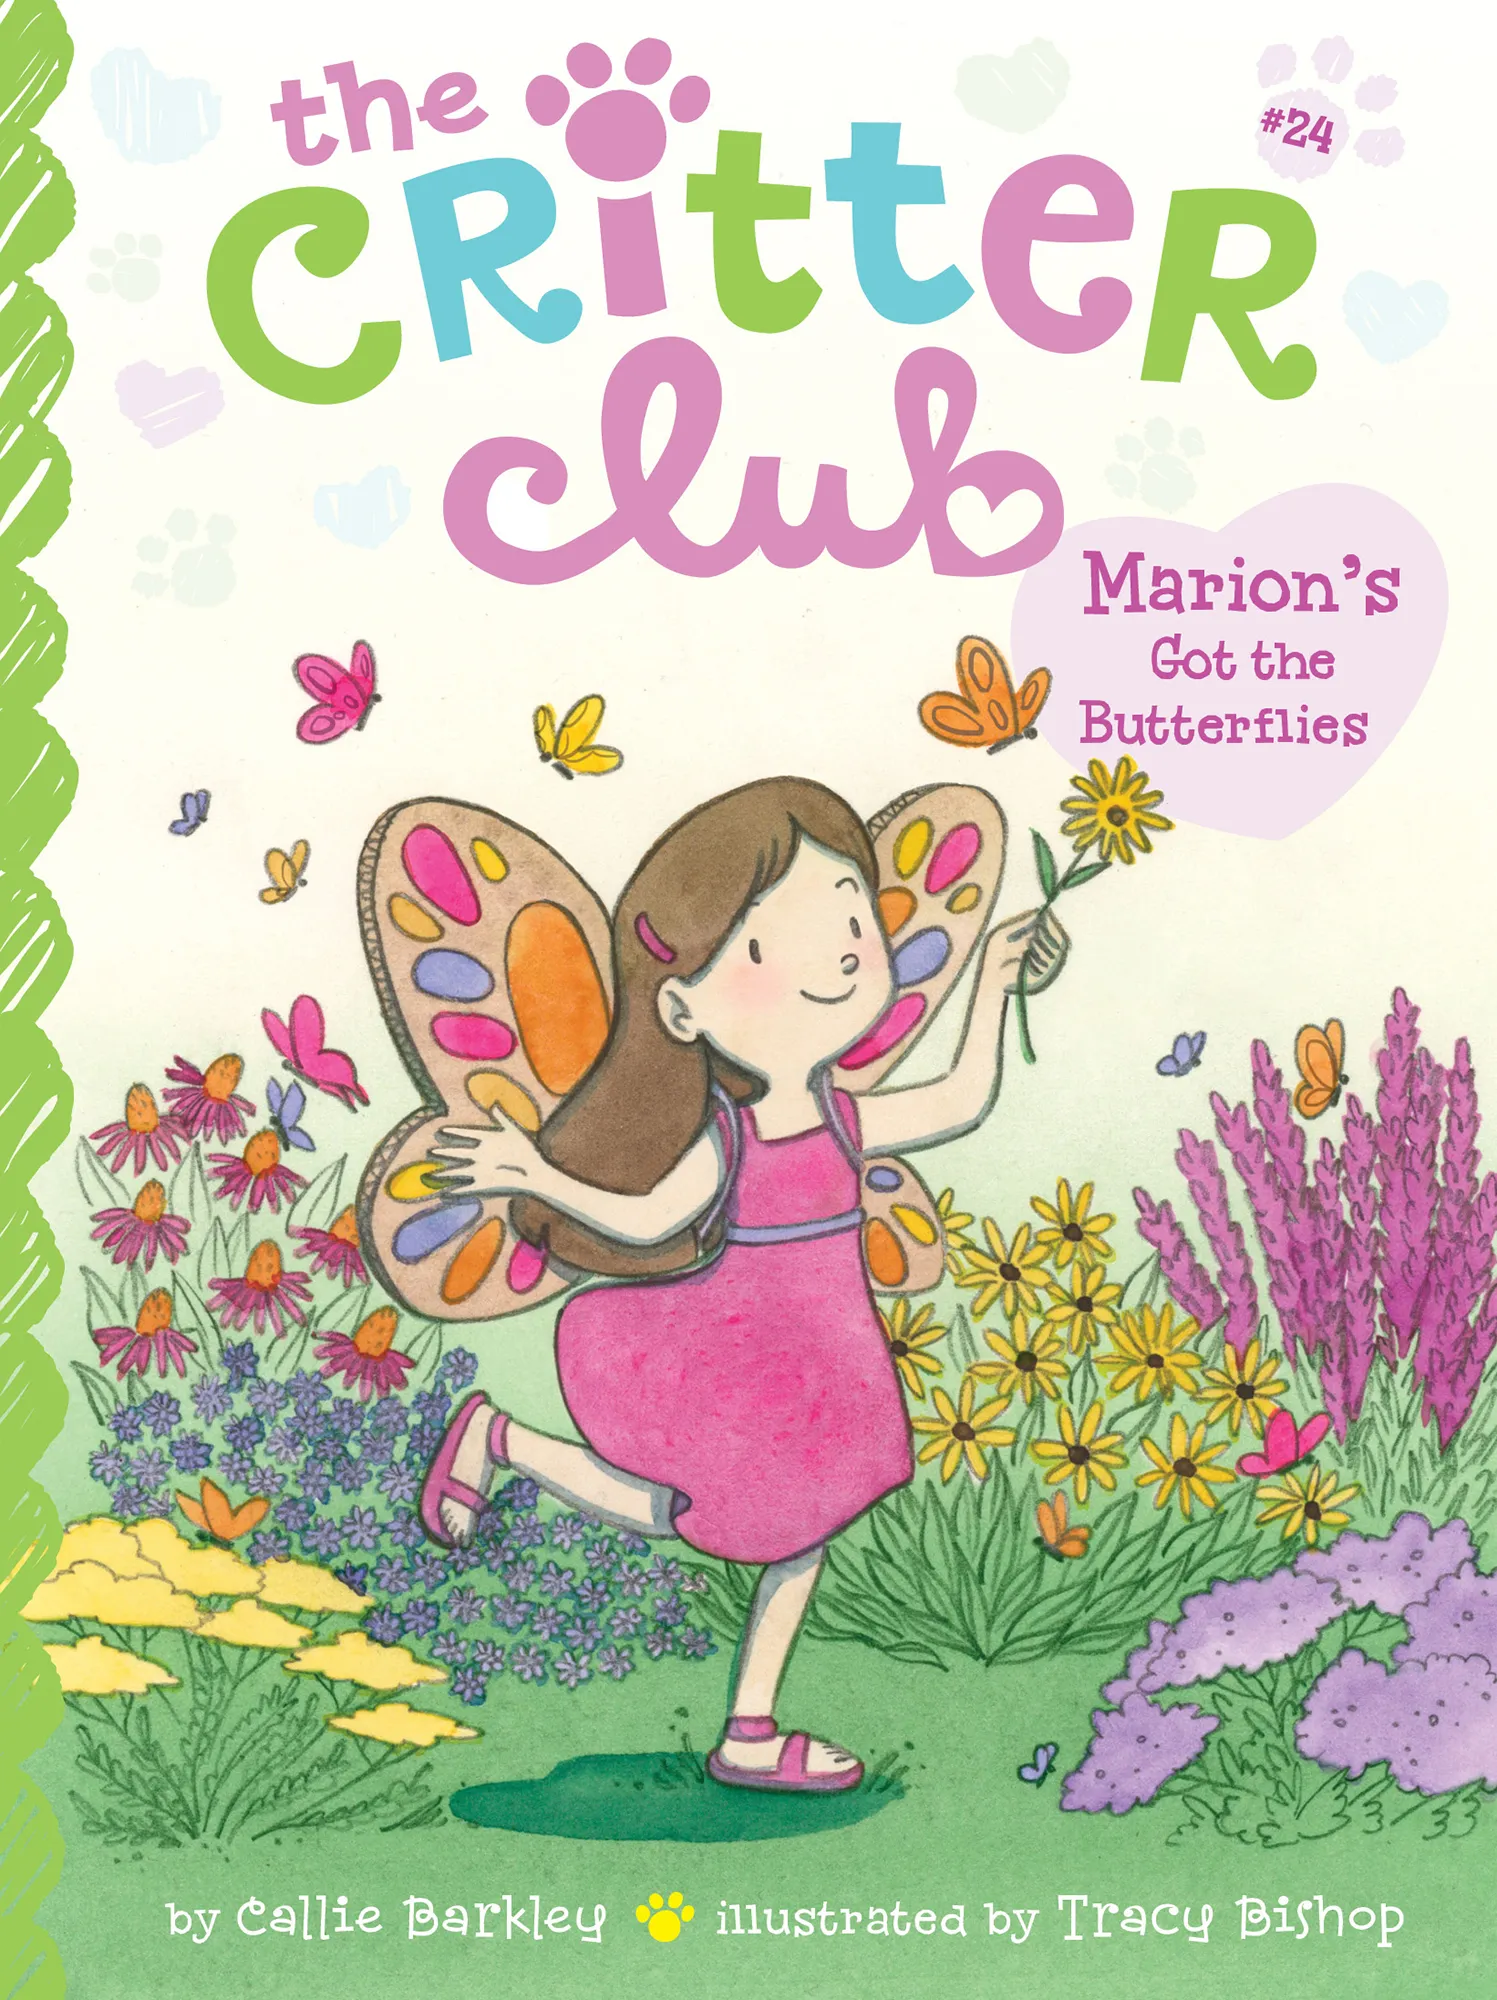 Marion's Got the Butterflies (The Critter Club #24)